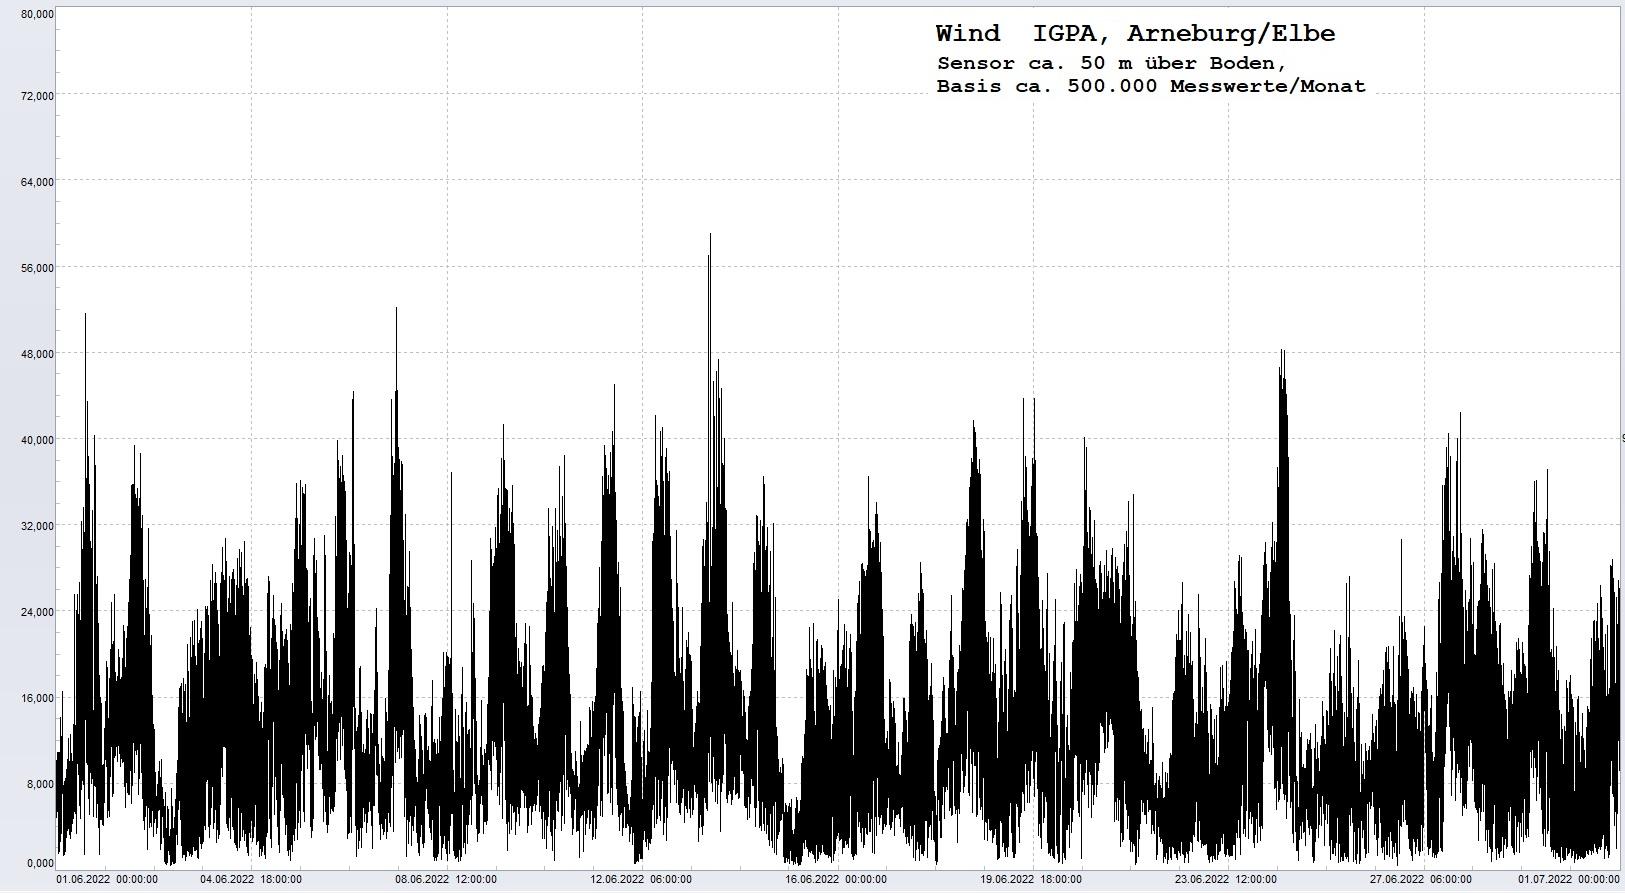 Arneburg Histogramm Winddaten Monat Juni 2022, 
  Sensor auf Gebude, ca. 50 m ber Erdboden, Basis: 5s-Aufzeichnung